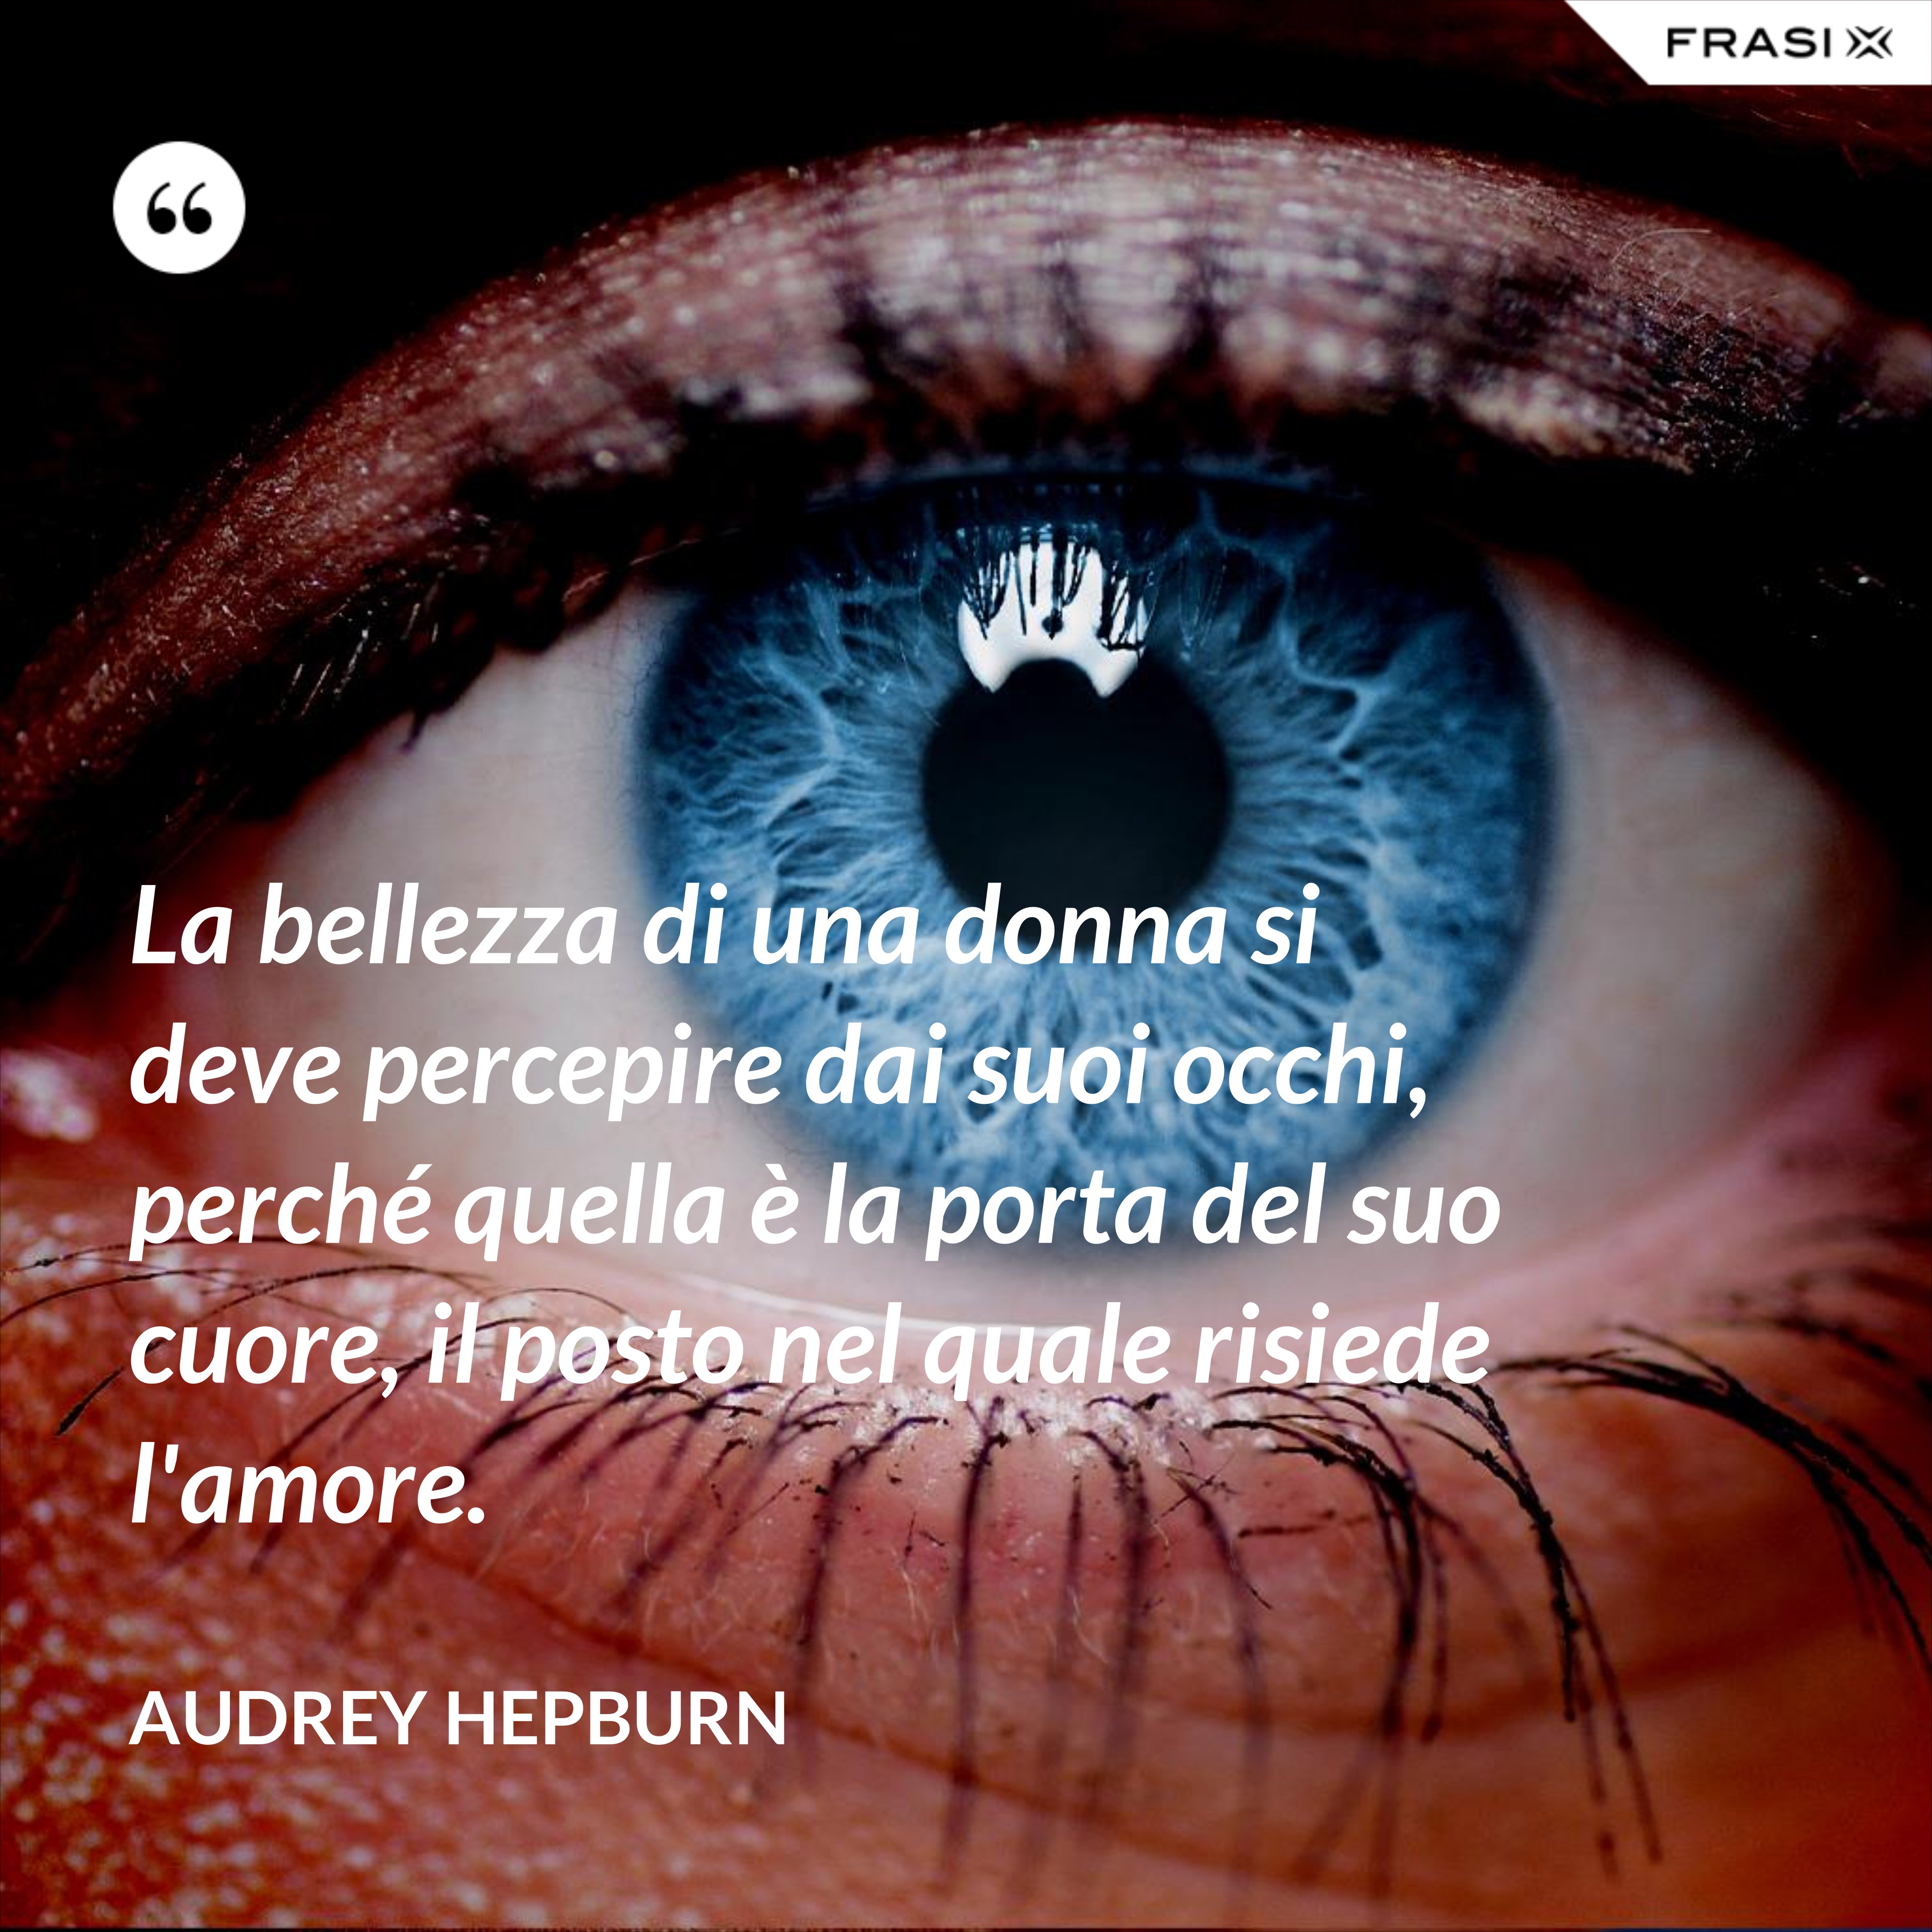 La bellezza di una donna si deve percepire dai suoi occhi, perché quella è la porta del suo cuore, il posto nel quale risiede l'amore. - Audrey Hepburn